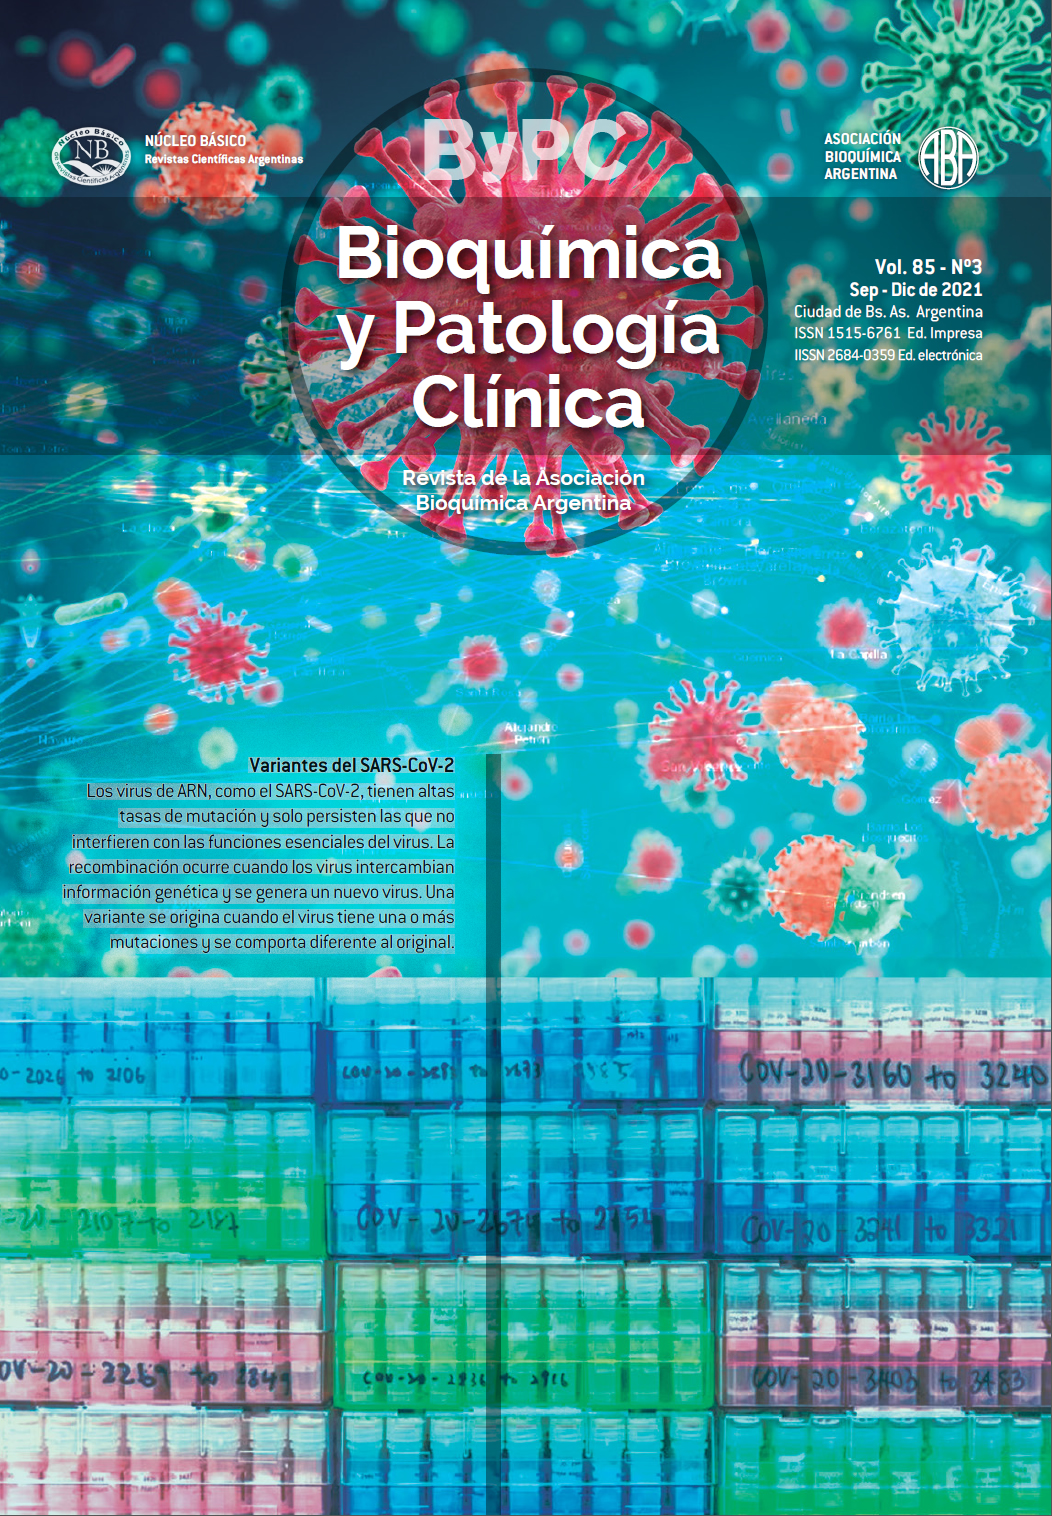 Subclases de inmunoglobulinas G más frecuentes en pacientes con diagnóstico de gammapatía monoclonal de incierto (MGUS) y mieloma múltiple (MM) en relación con su cadena liviana acompañante | Revista Bioquímica y